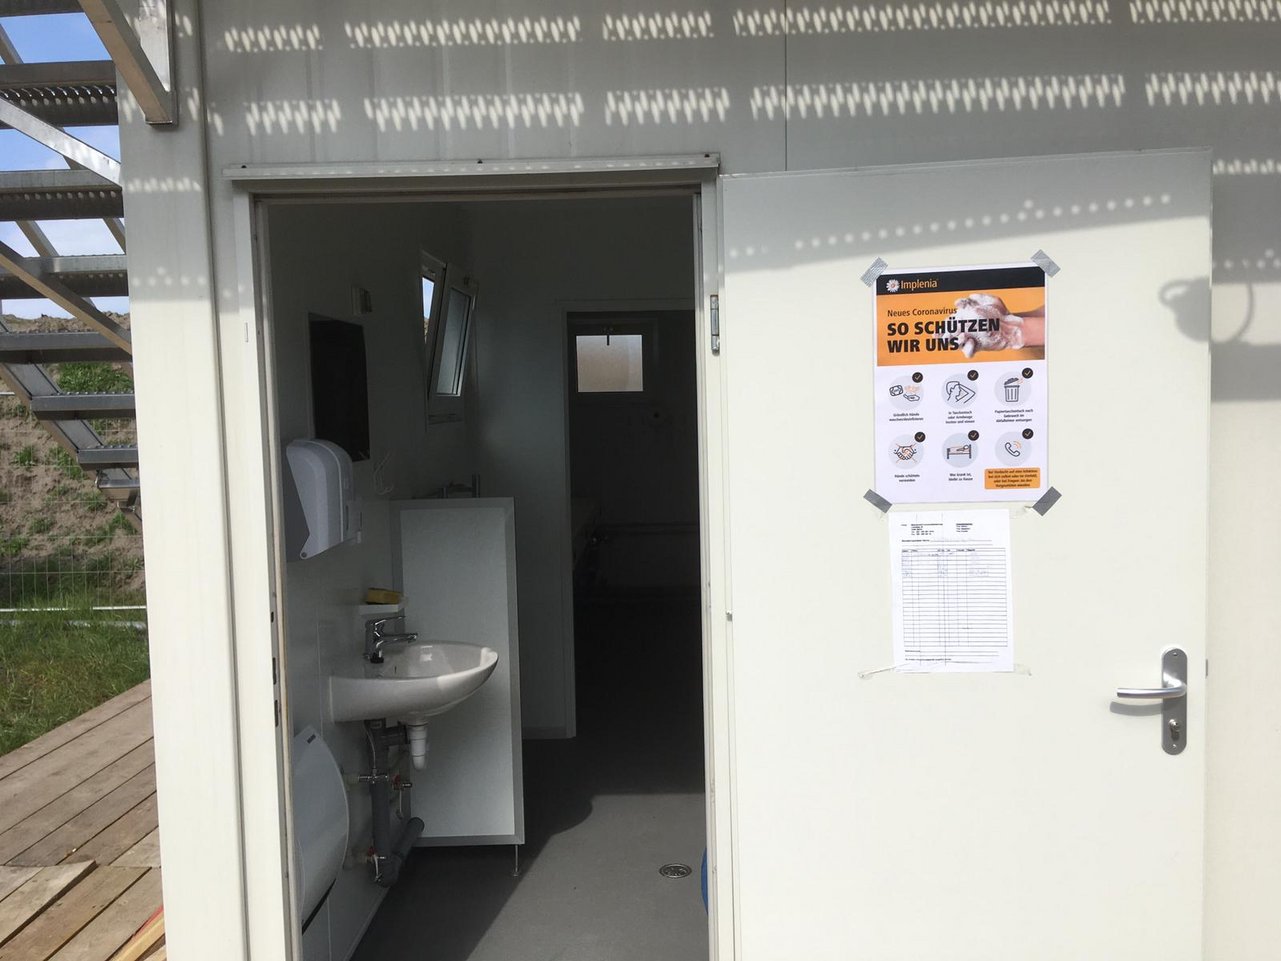 "Informazione e igiene: Nei servizi igienici sono affissi anche manifesti informativi "